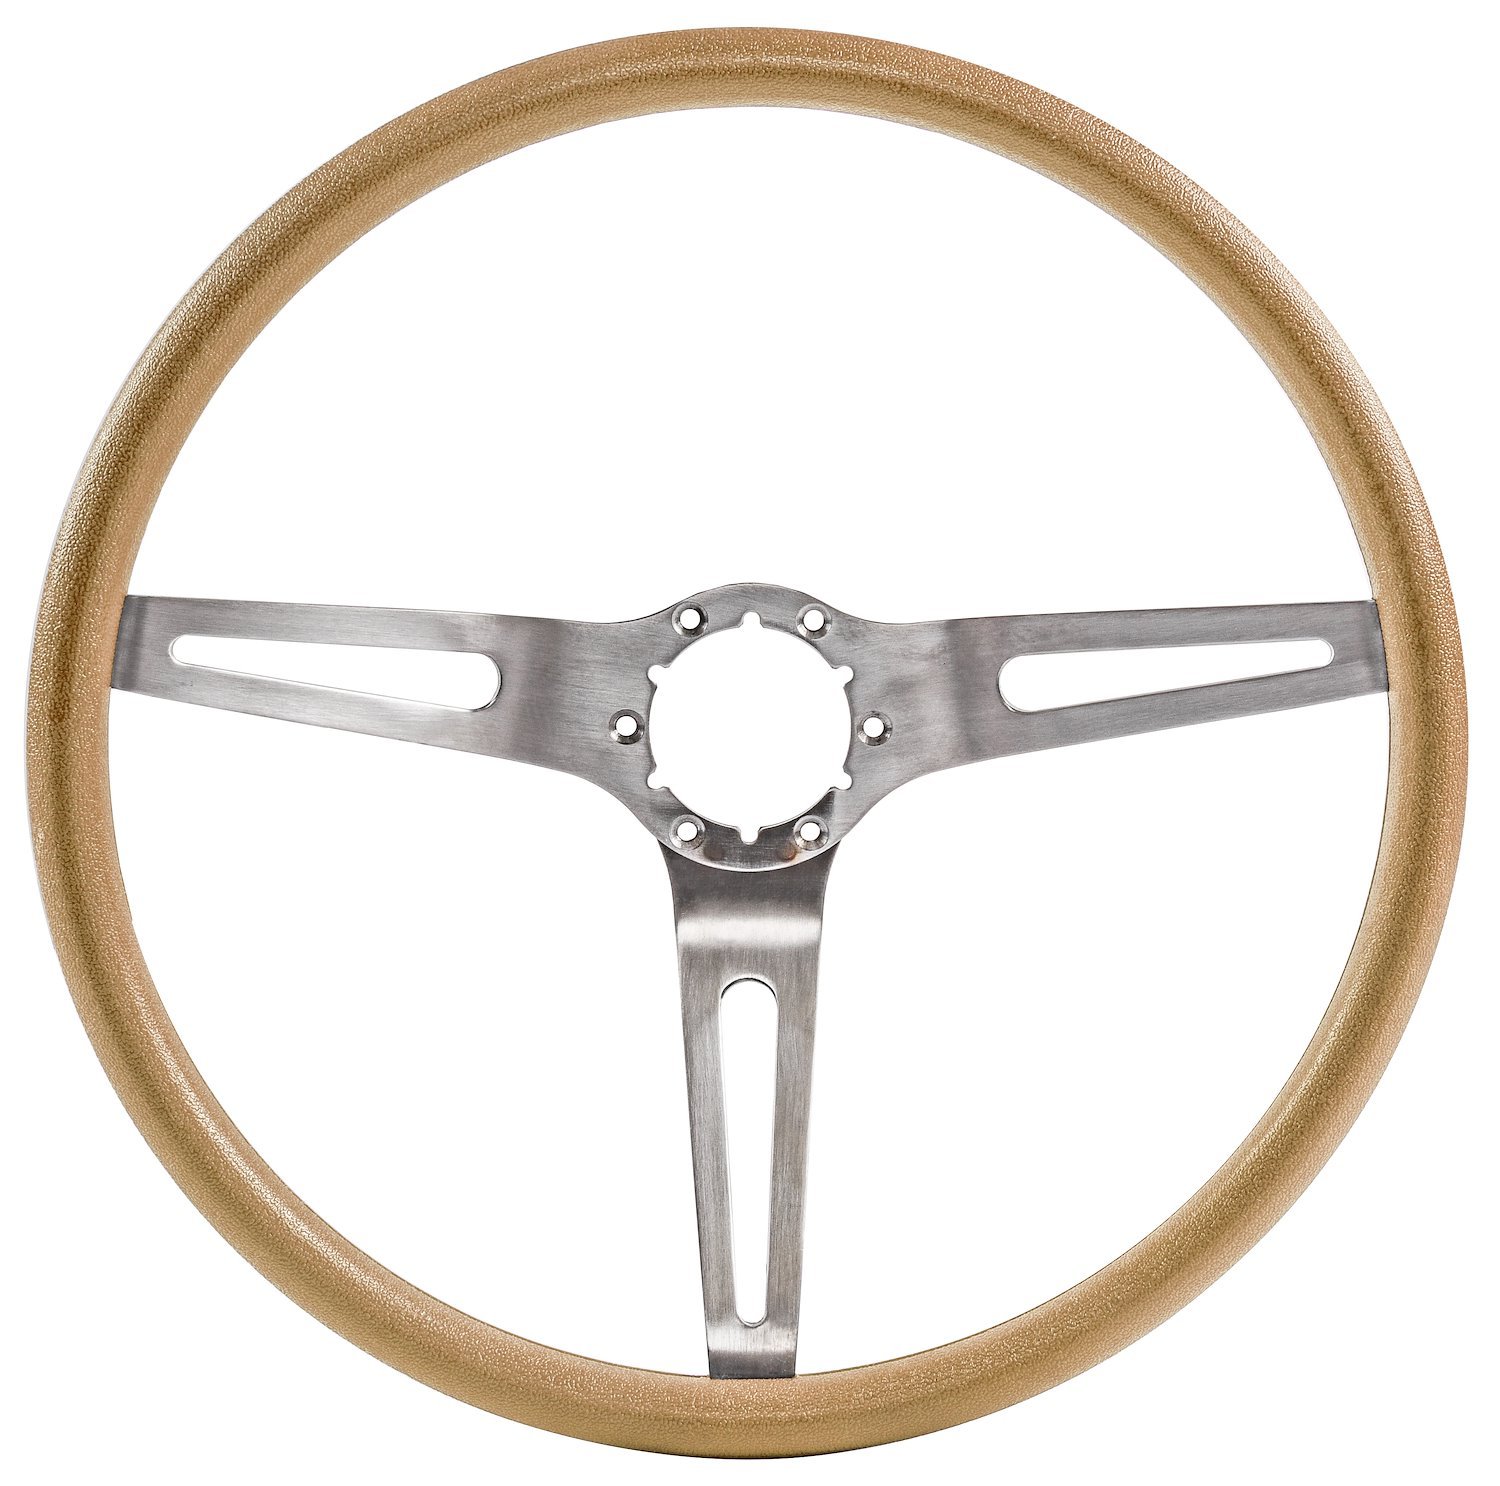 3-Spoke Comfort Grip Steering Wheel for Select 1967-1972 Chevrolet Cars & 1960-1975 Chevrolet & GMC Trucks [Saddle]